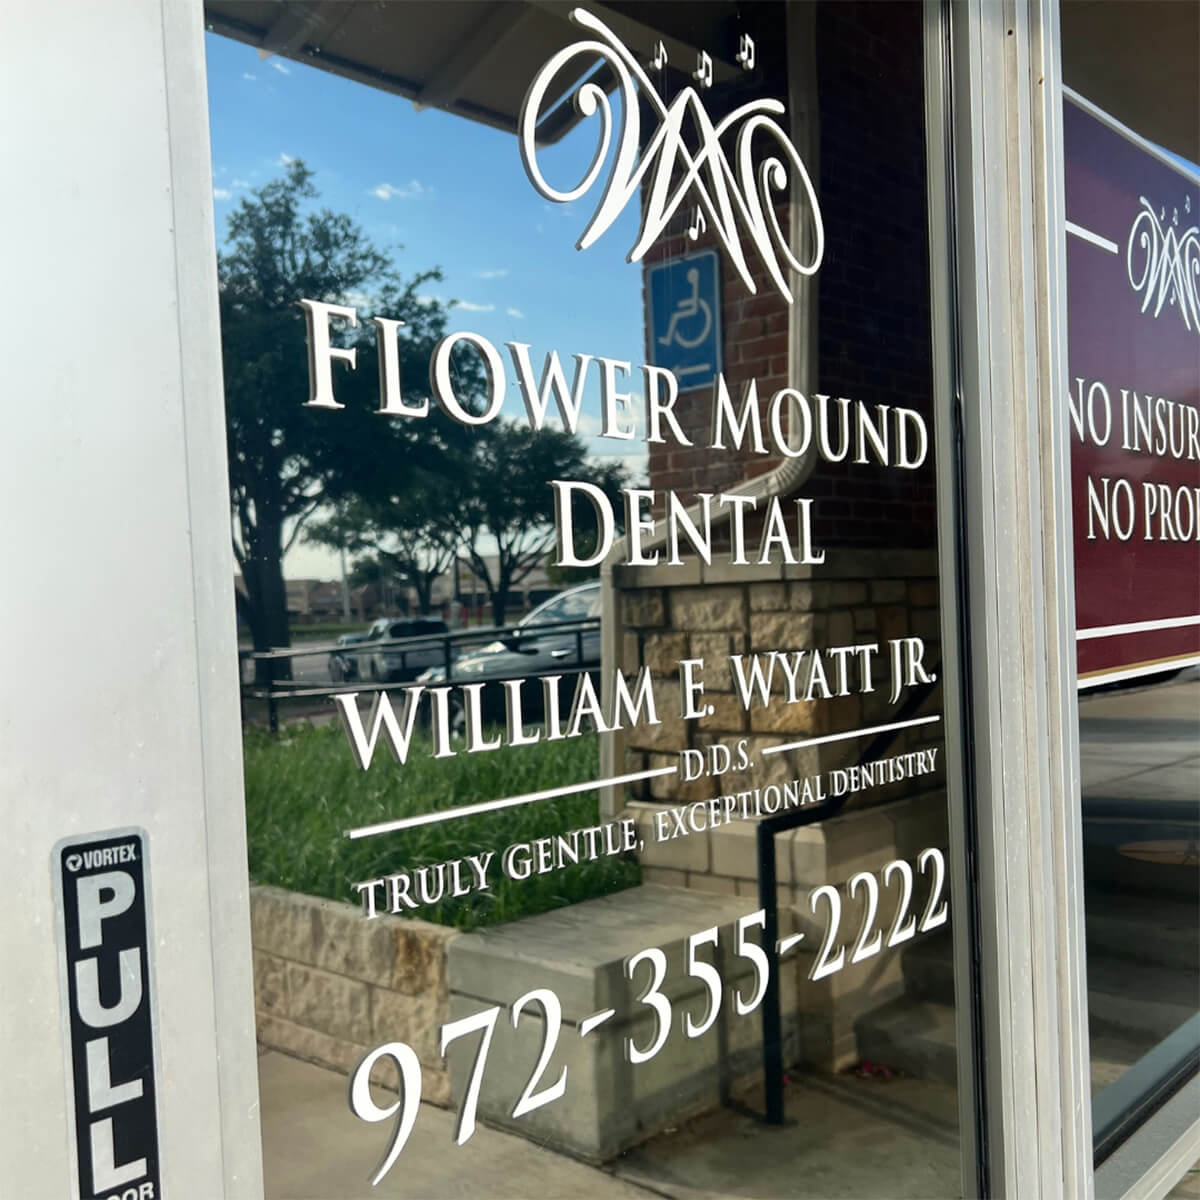 Dental Benefits in Flower Mound TX Area